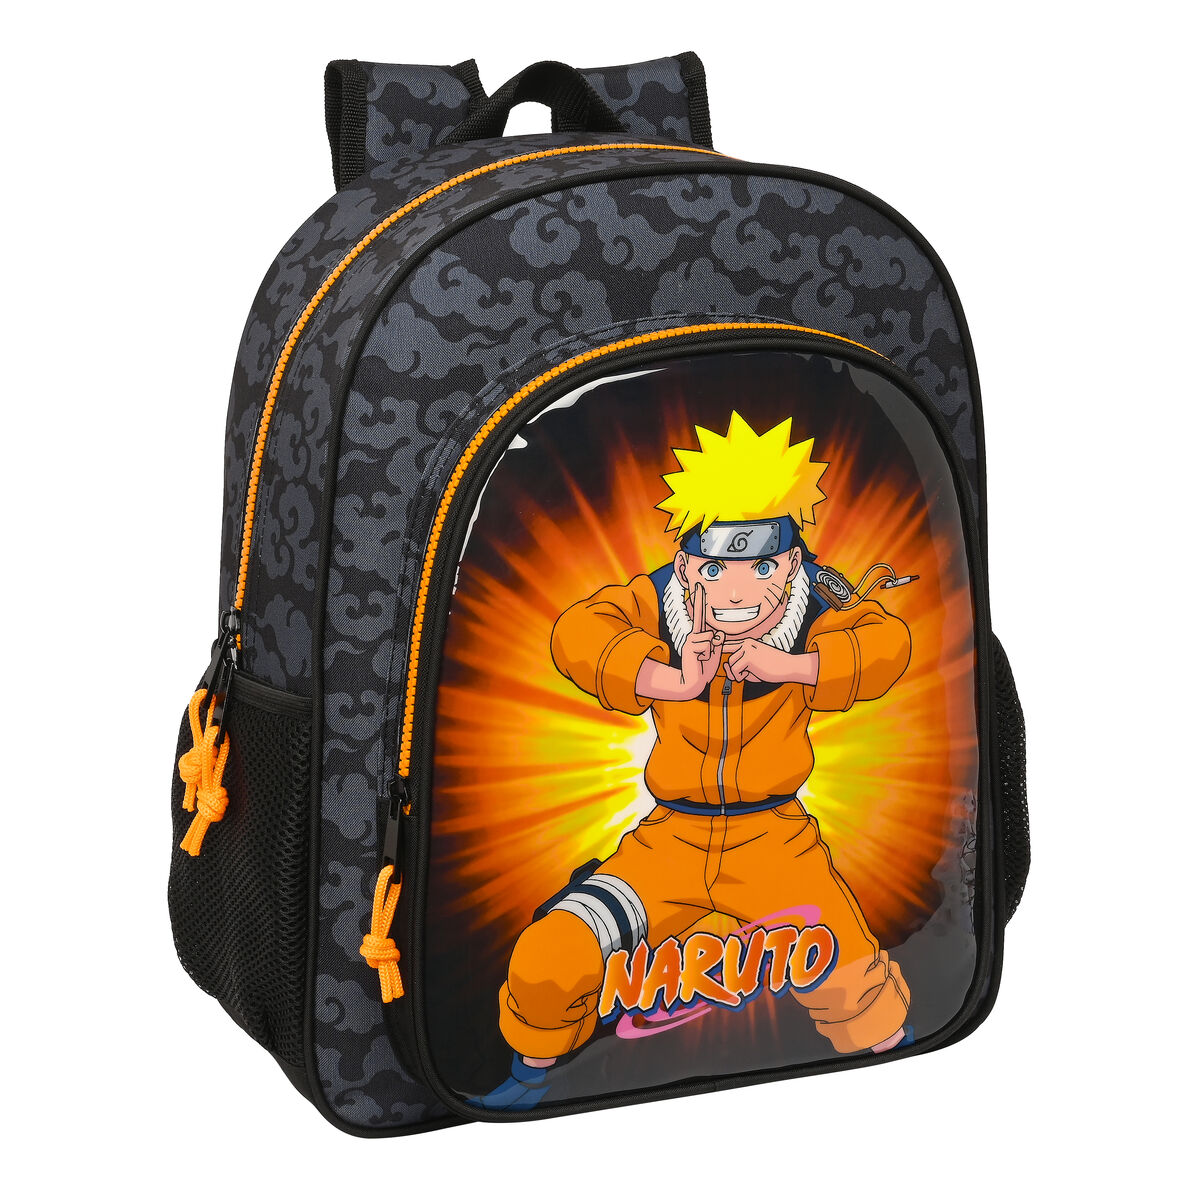 Naruto - Mochila Escolar con Compartimentos y Espalda Acolchada